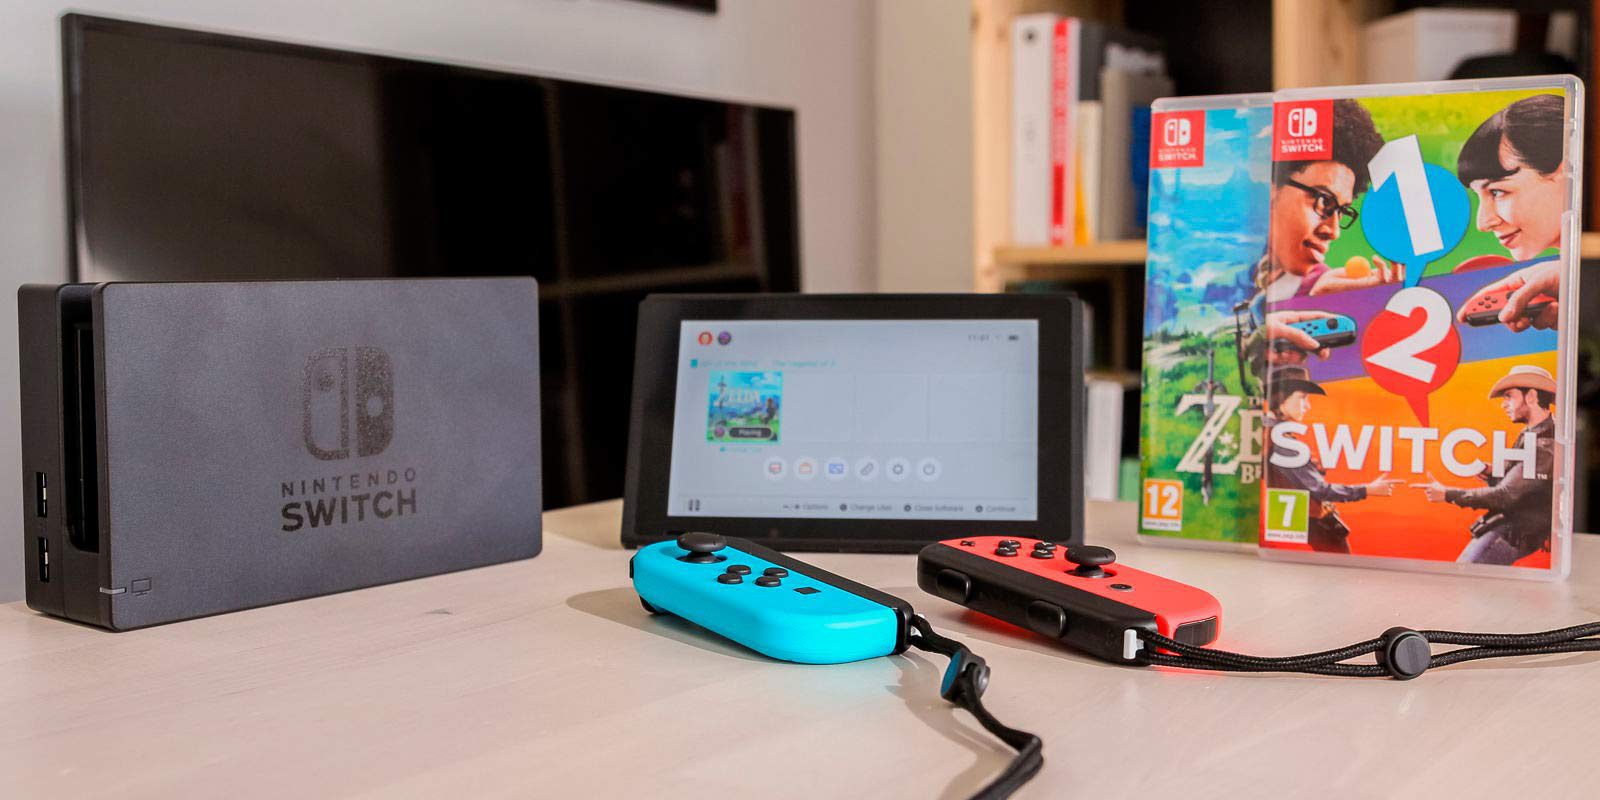 Nintendo Switch fue el producto más vendido del Black Friday en EE.UU.